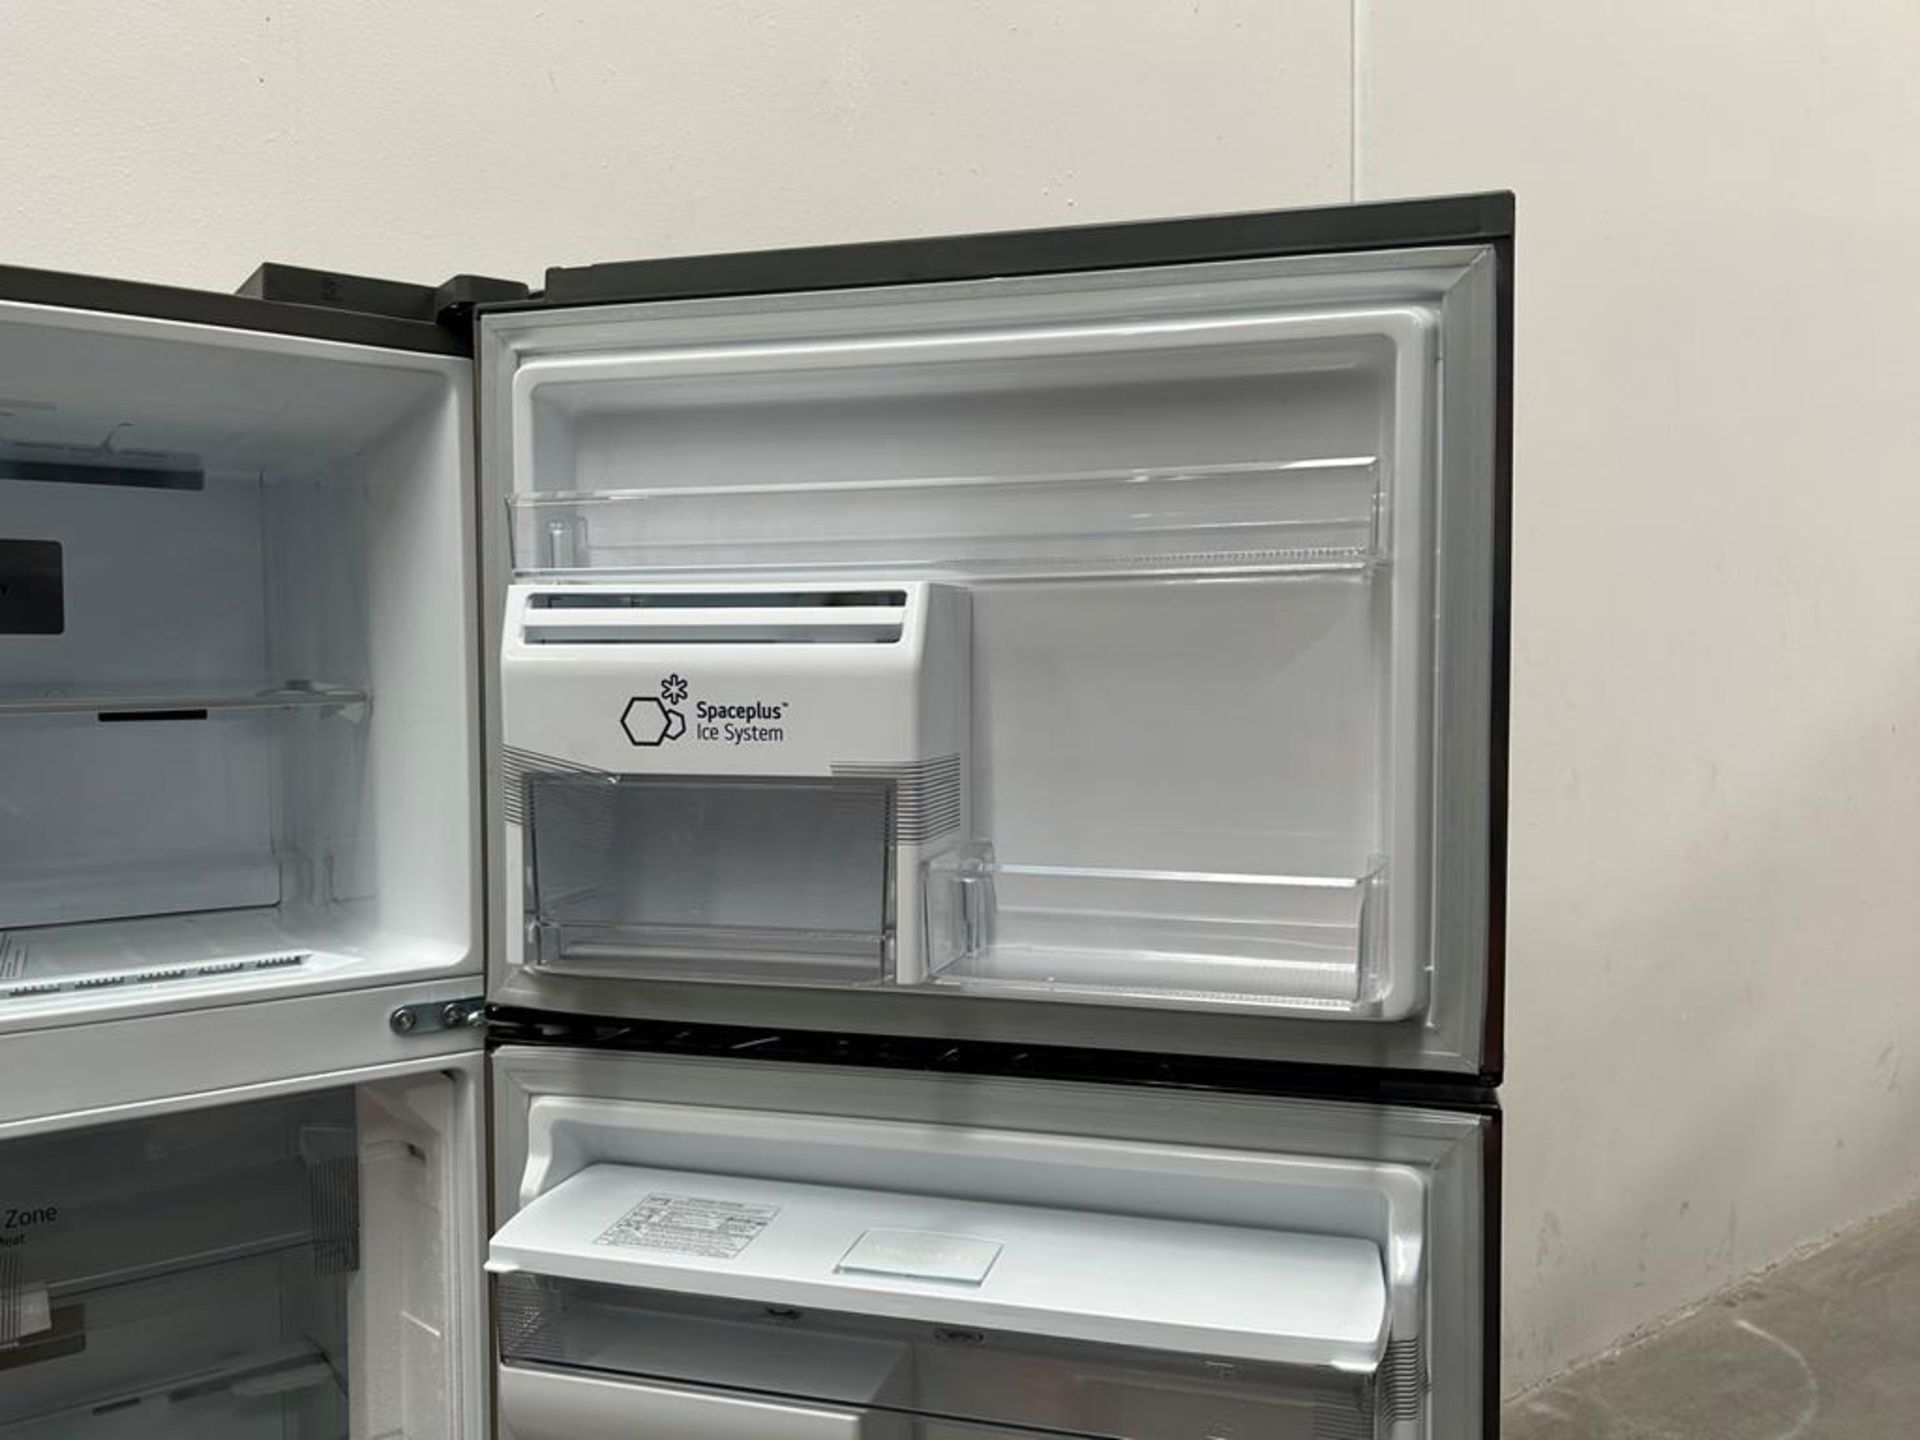 (NUEVO) Refrigerador con dispensador de agua Marca LG, Modelo VT40AWP, Serie 48304, Color GRIS - Image 8 of 11